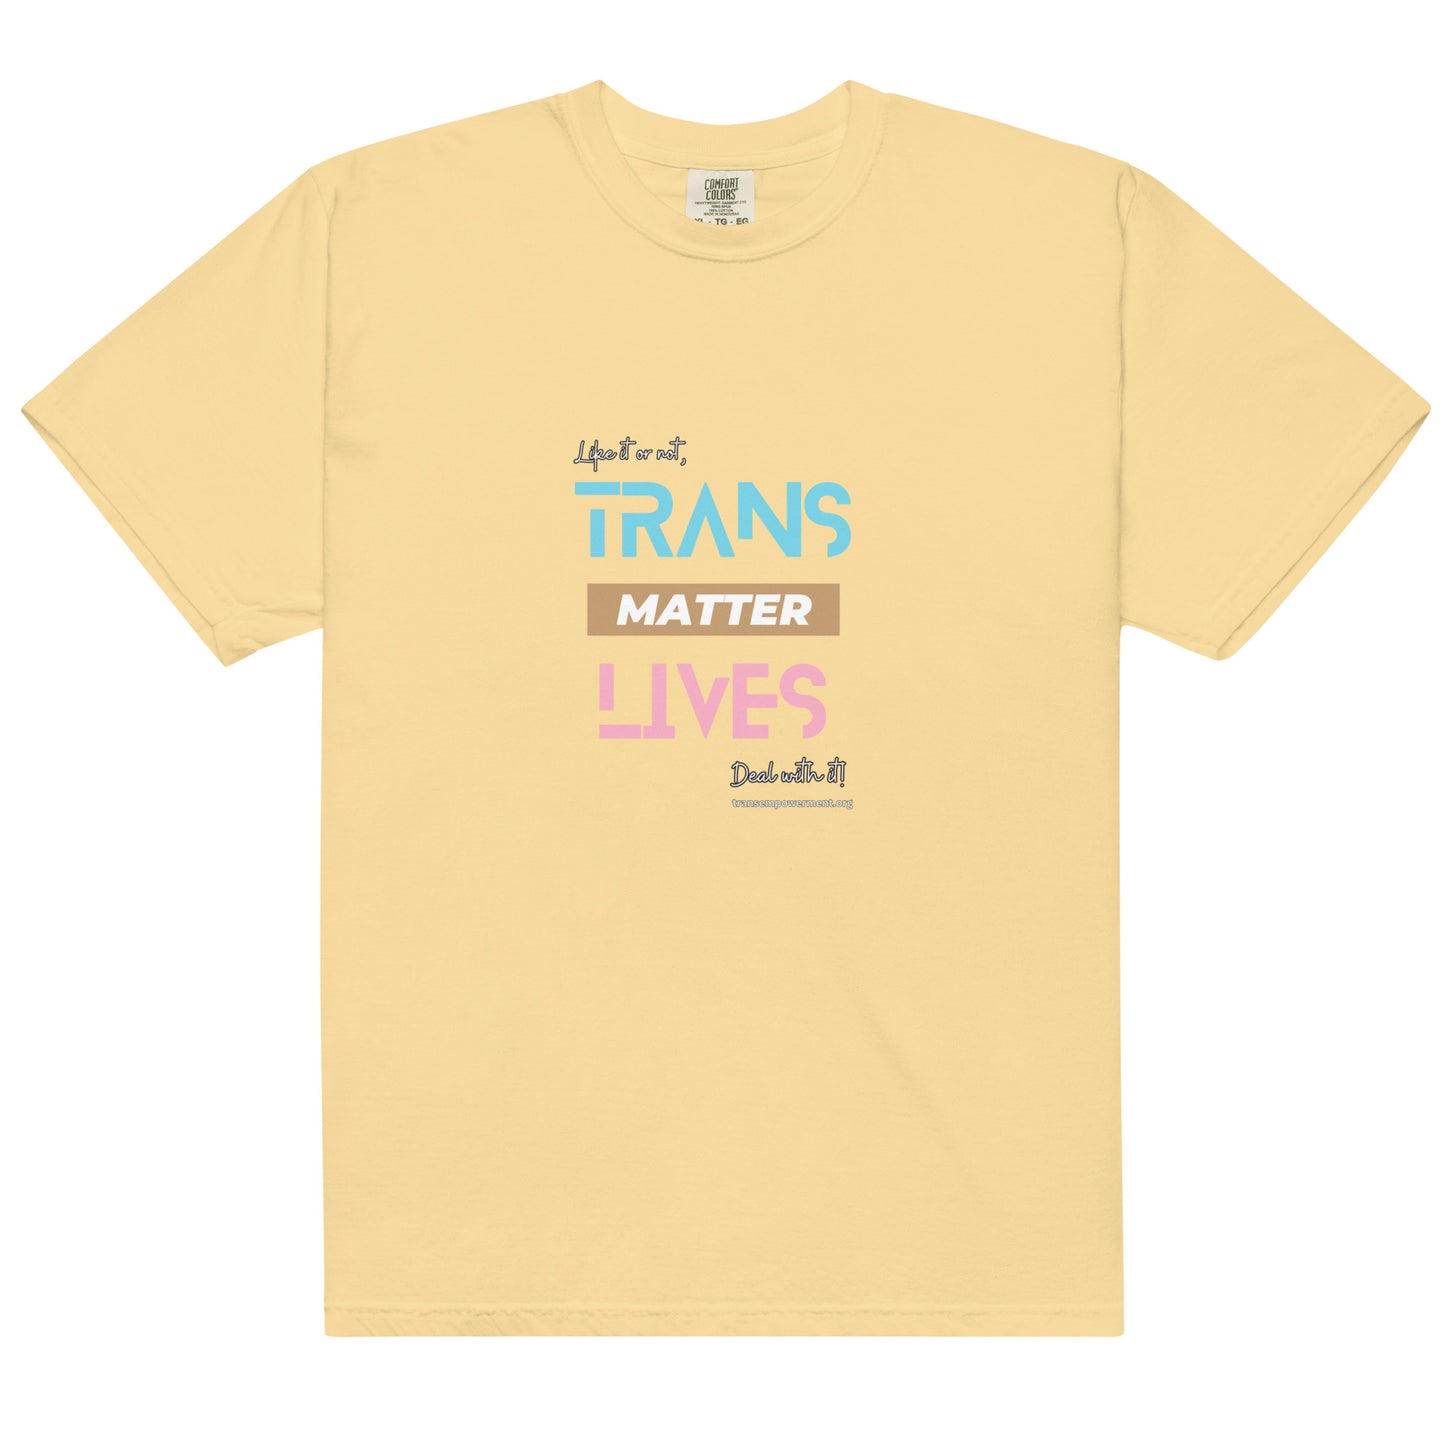 Trans Lives Matter, Deal with it! - Men’s garment-dyed heavyweight t-shirt